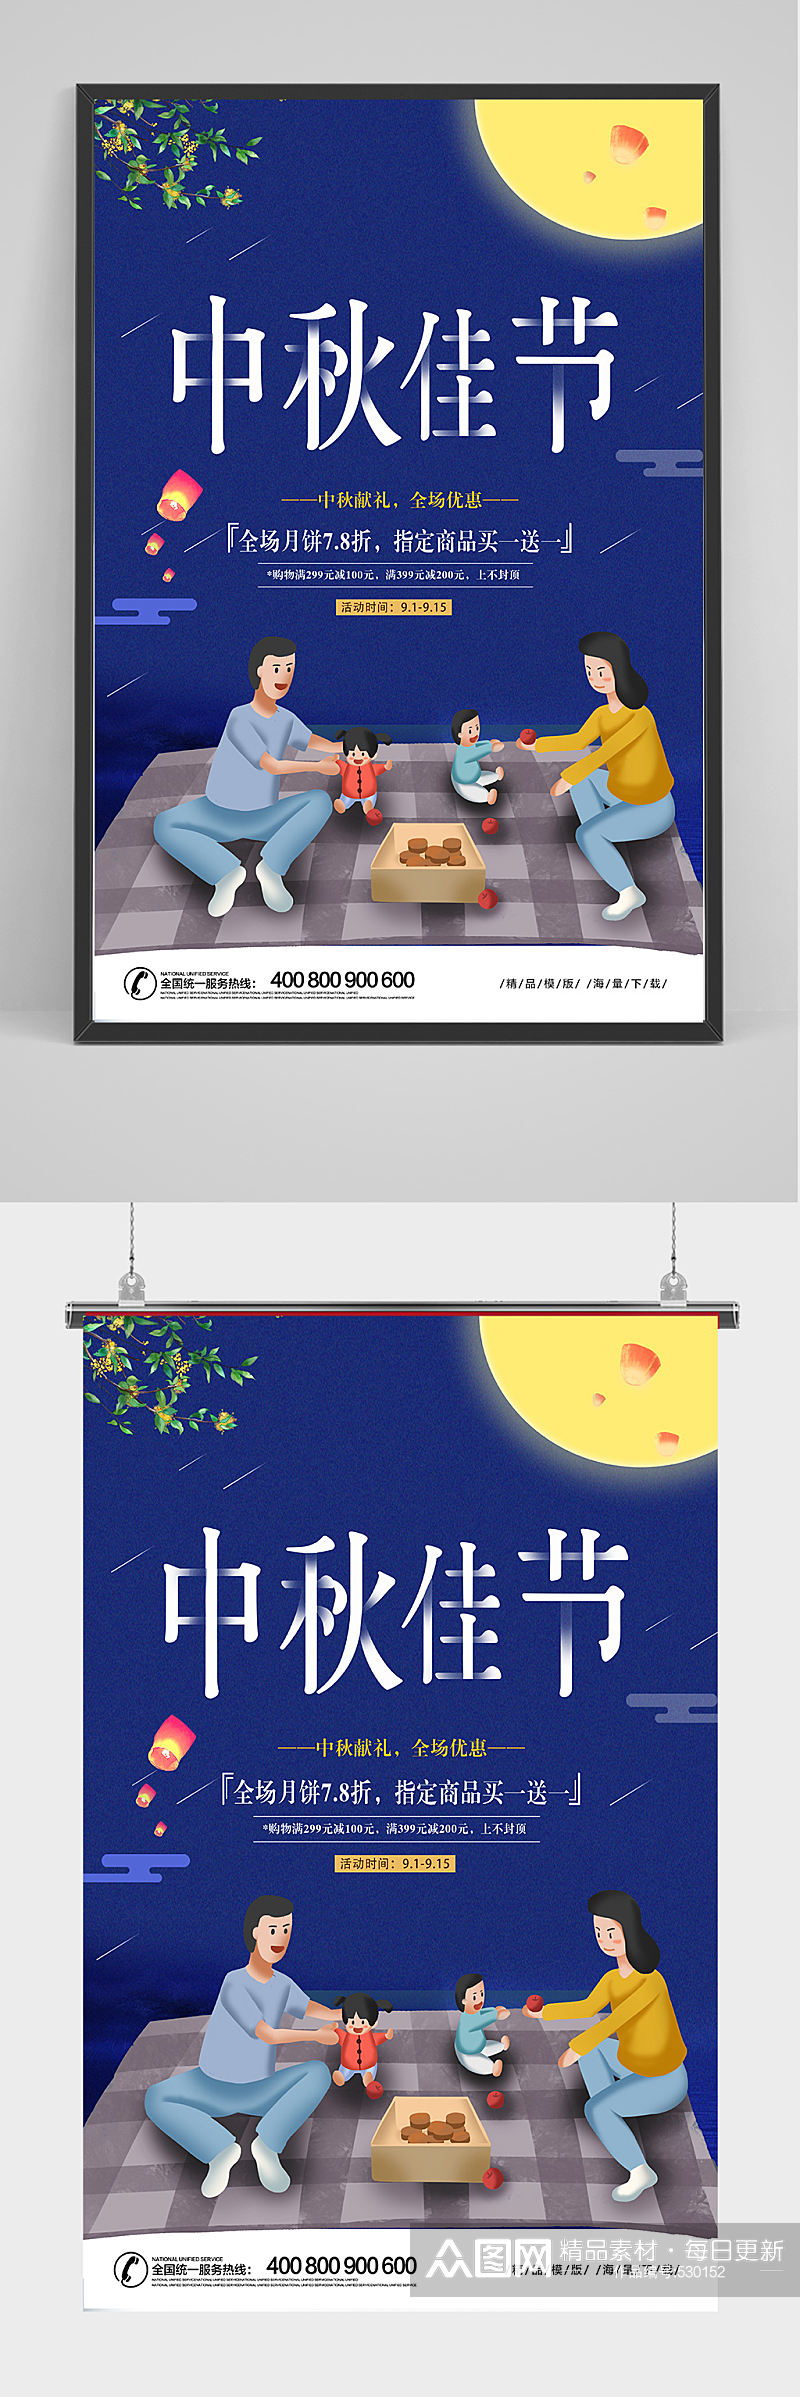 蓝色精品中秋佳节海报设计素材